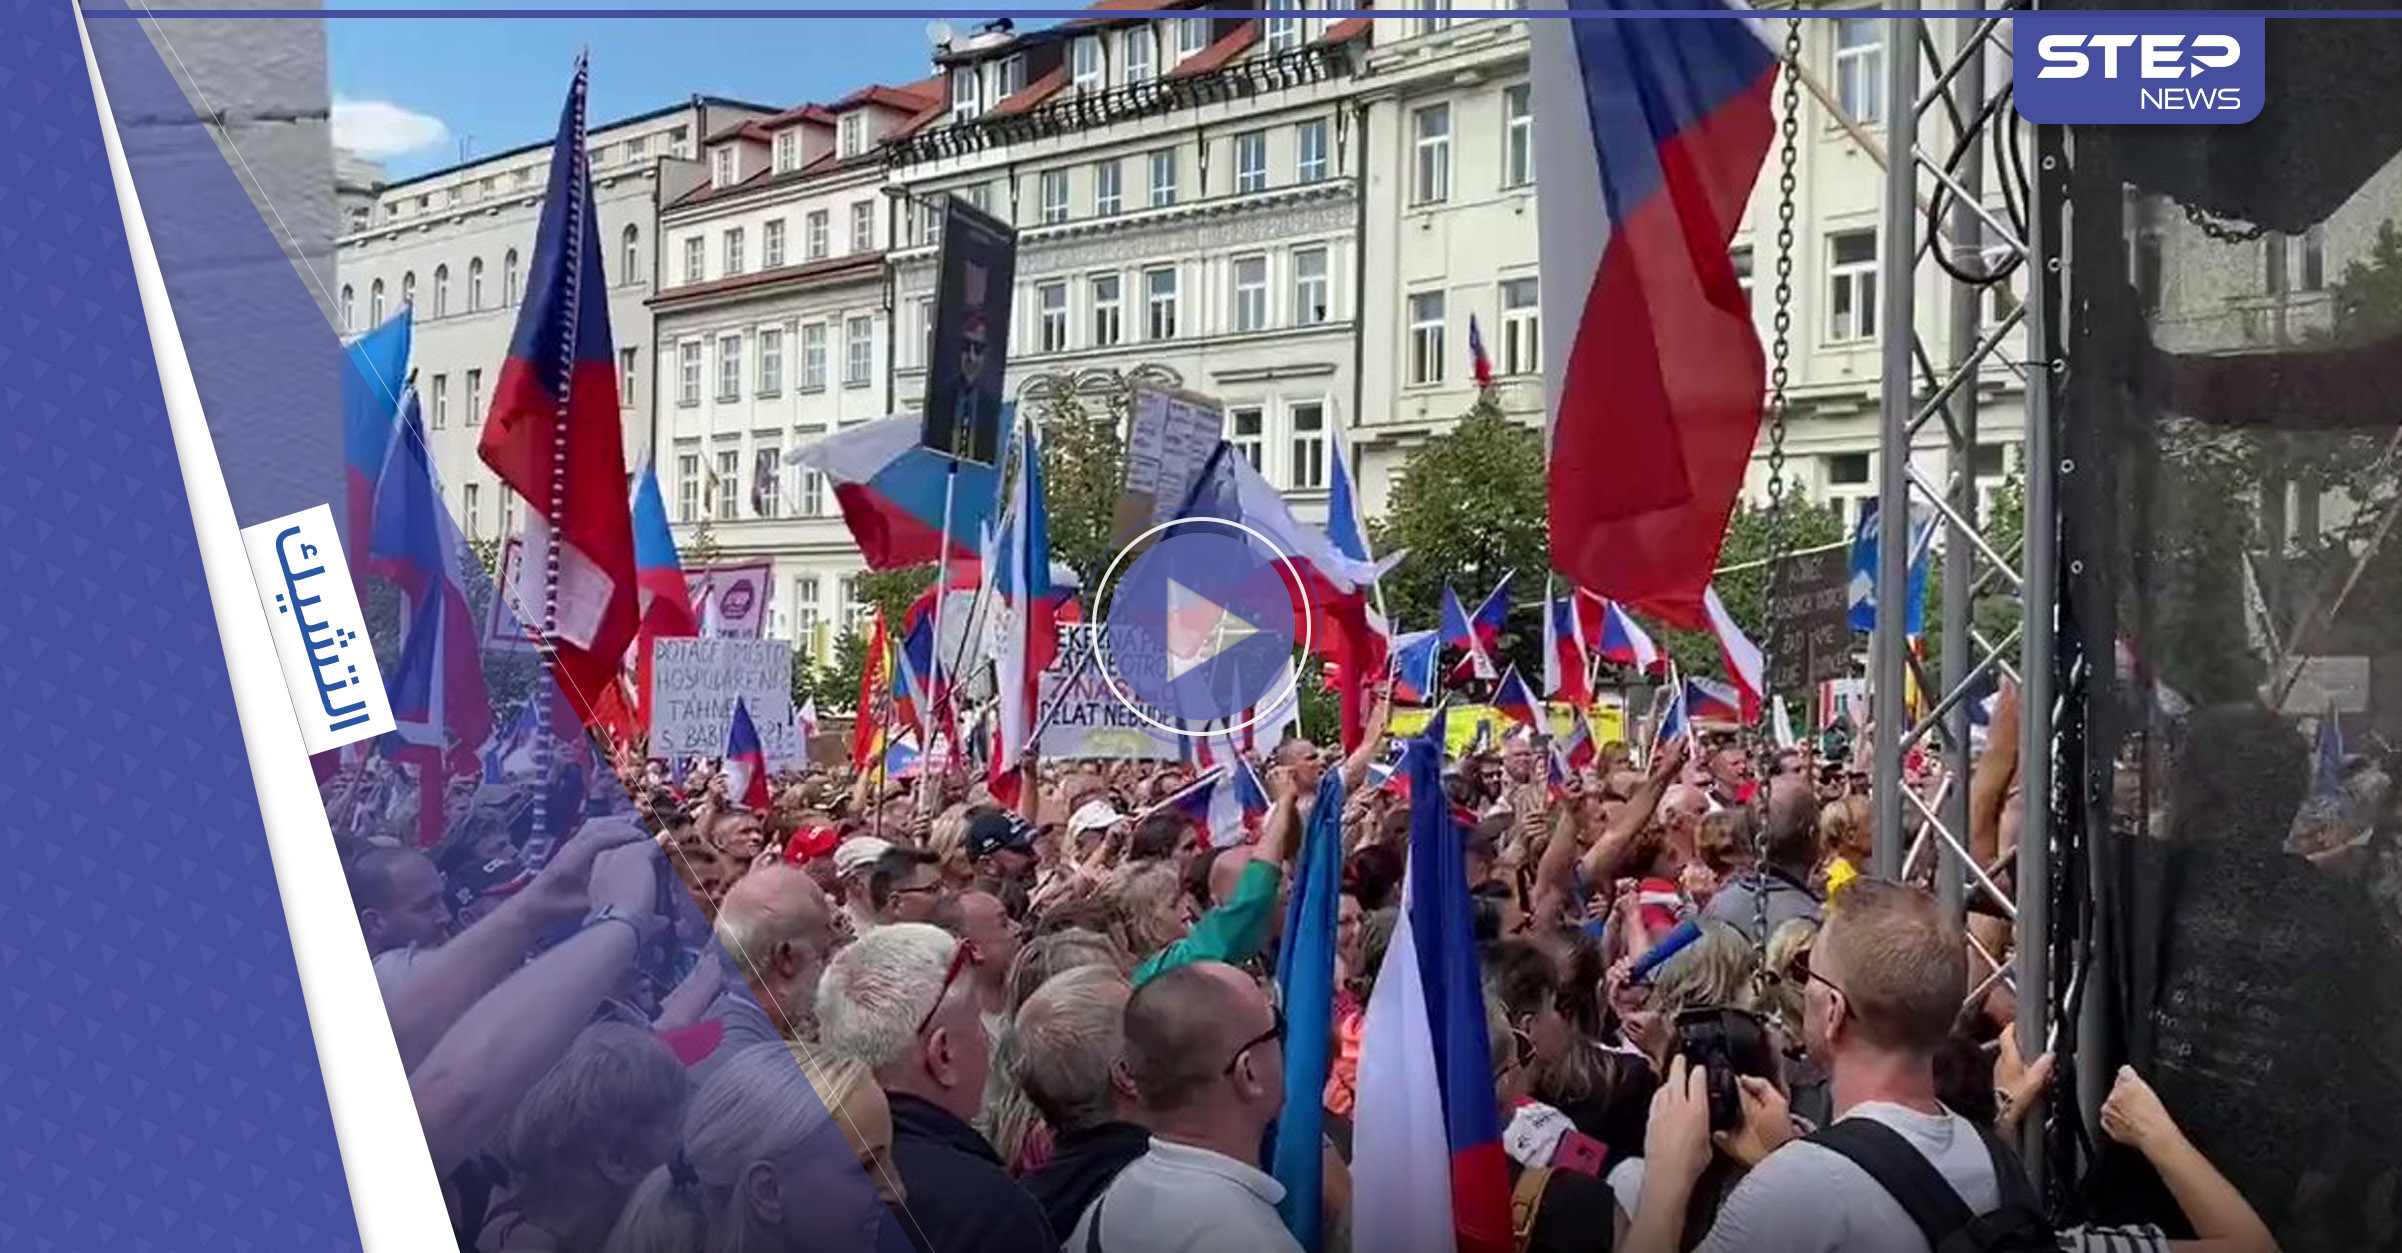 شاهد|| أوروبا تنتفض.. مظاهرة ضخمة في براغ عاصمة التشيك وتهديدات بالاعتصام